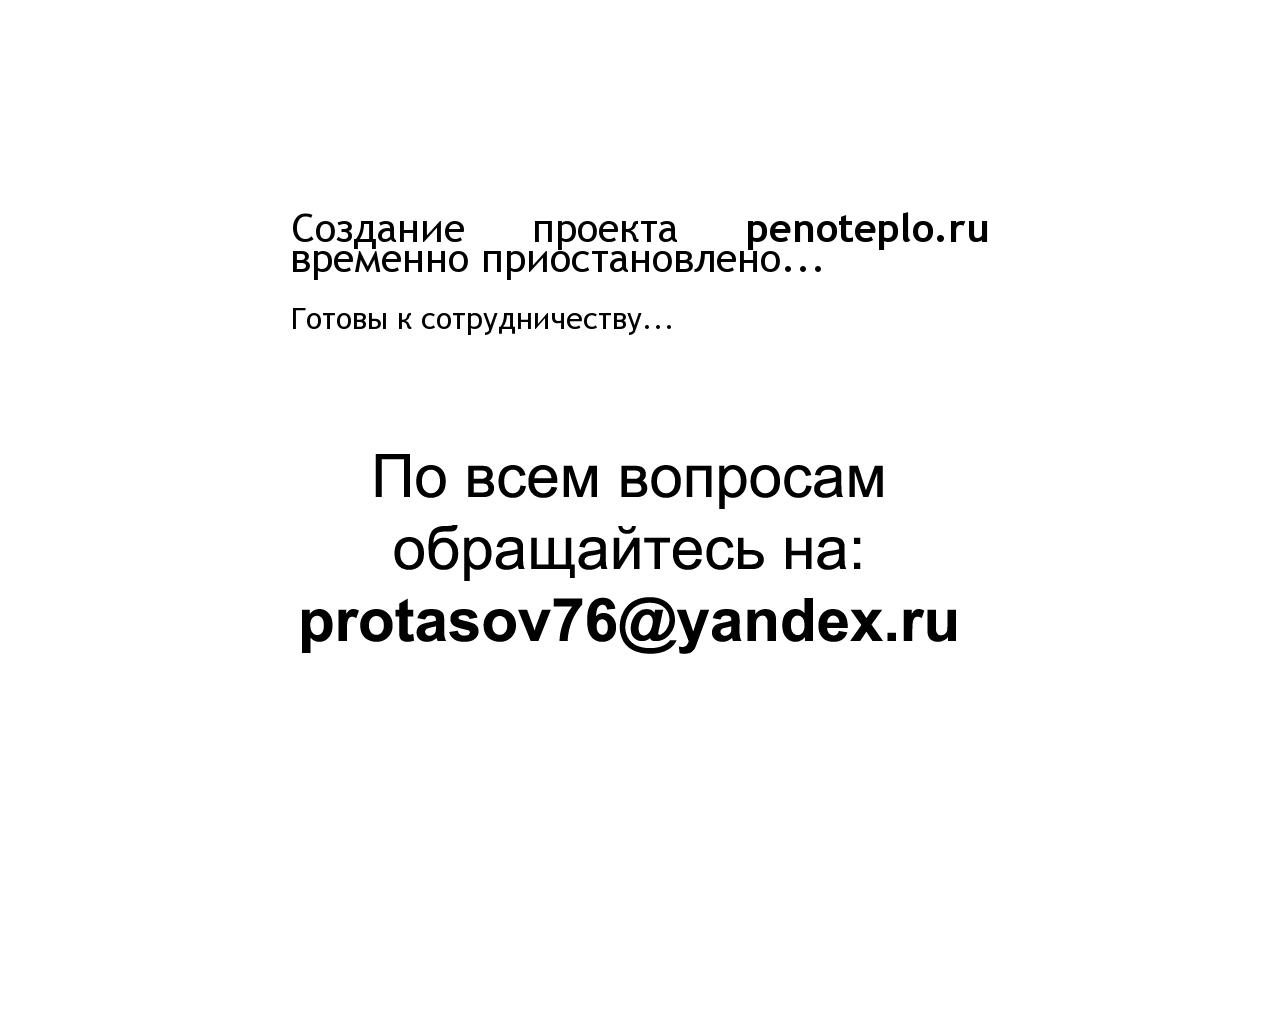 Изображение сайта penoteplo.ru в разрешении 1280x1024